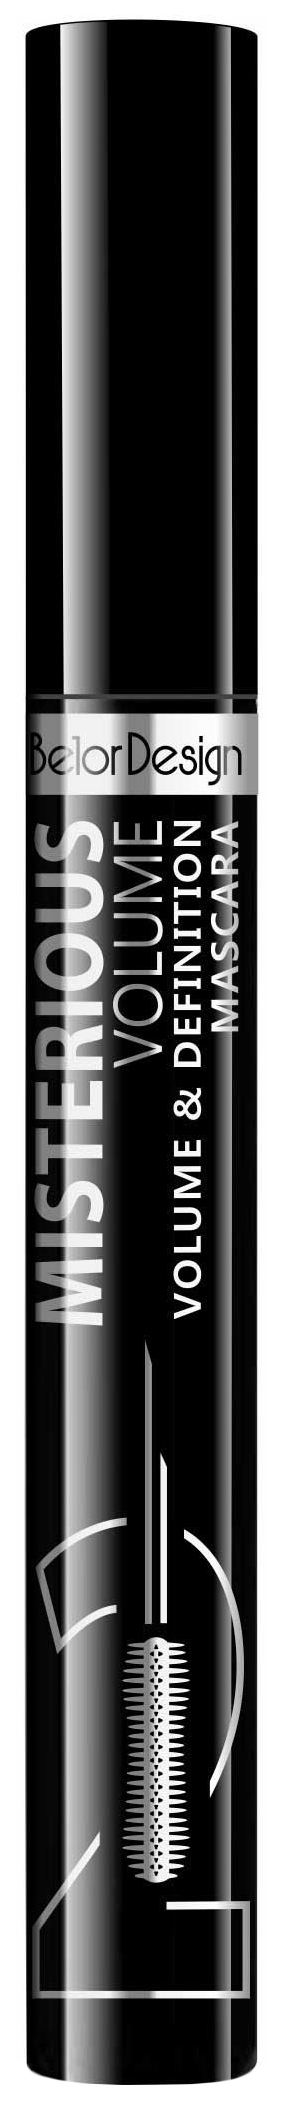 Тушь для ресниц Belor Design Misterious Volume объёмная, разделяющая, чёрная тушь для ресниц belor design magic 100% volume mascara 7 6 г